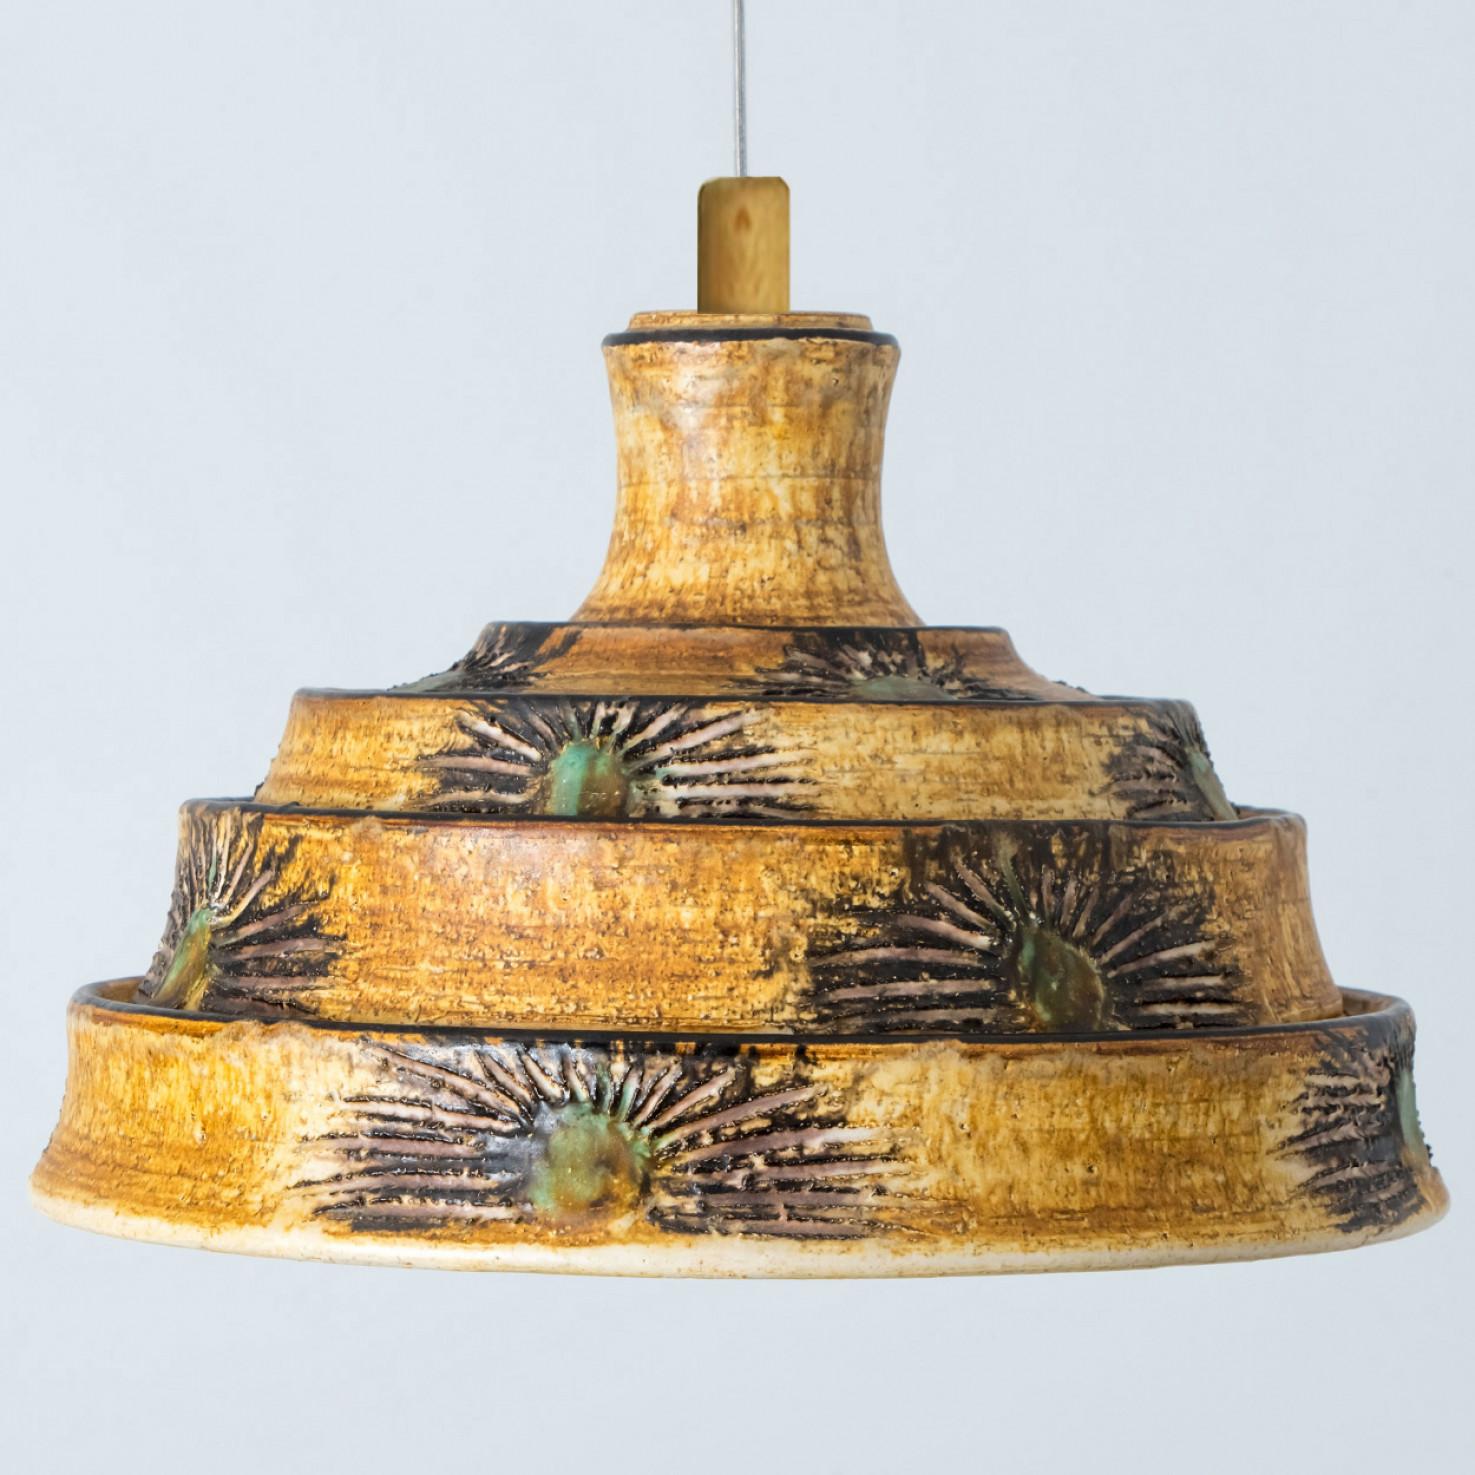 Superbe lampe suspendue ronde à la forme inhabituelle, fabriquée dans les années 1970 au Danemark avec des céramiques aux riches couleurs brunes et jaunes. Nous disposons également d'une multitude de jeux de lumière et d'arrangements uniques en